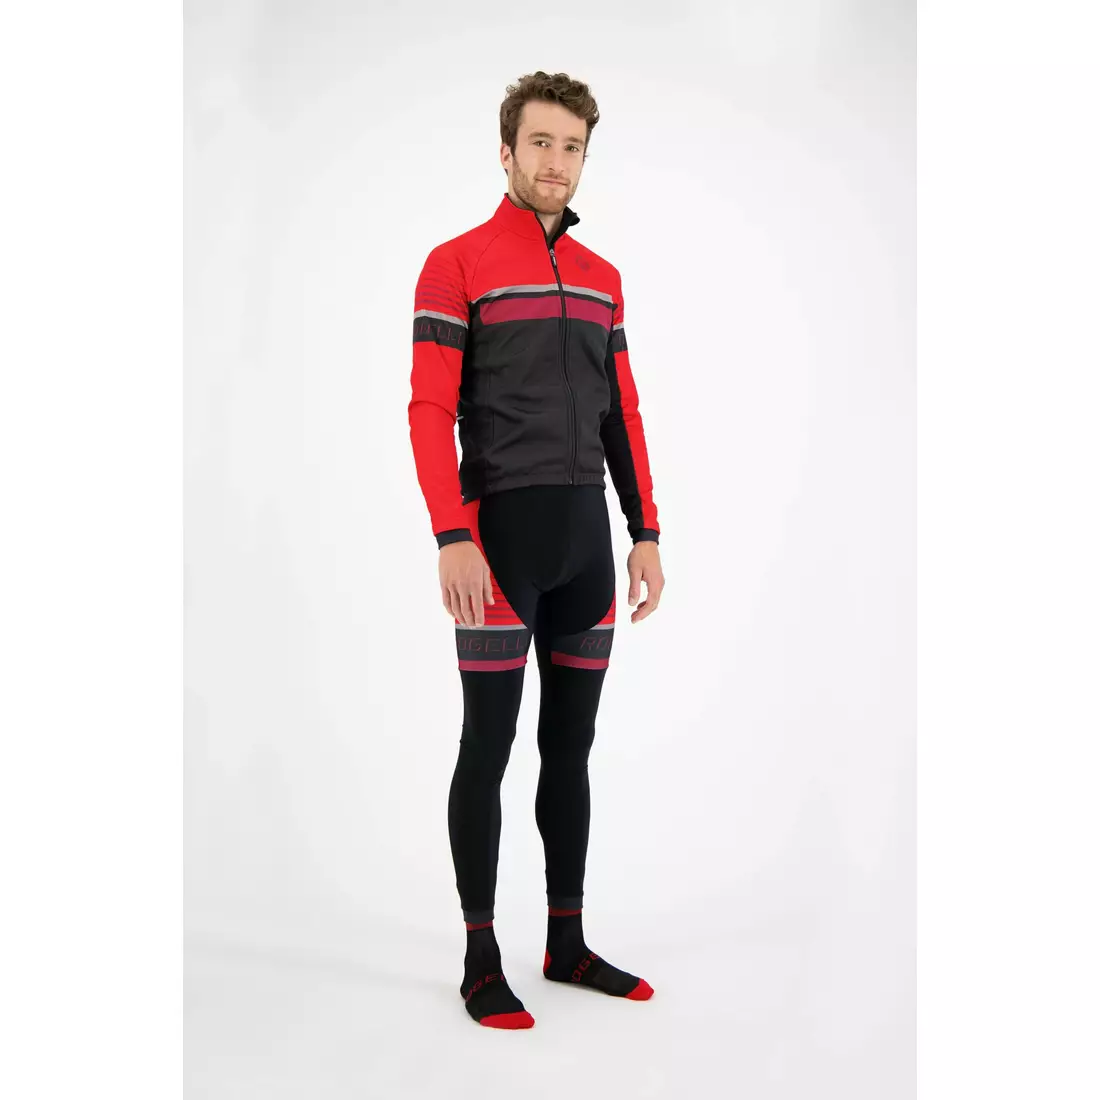 ROGELLI Pánska cyklistická bunda HERO čierna a červená 